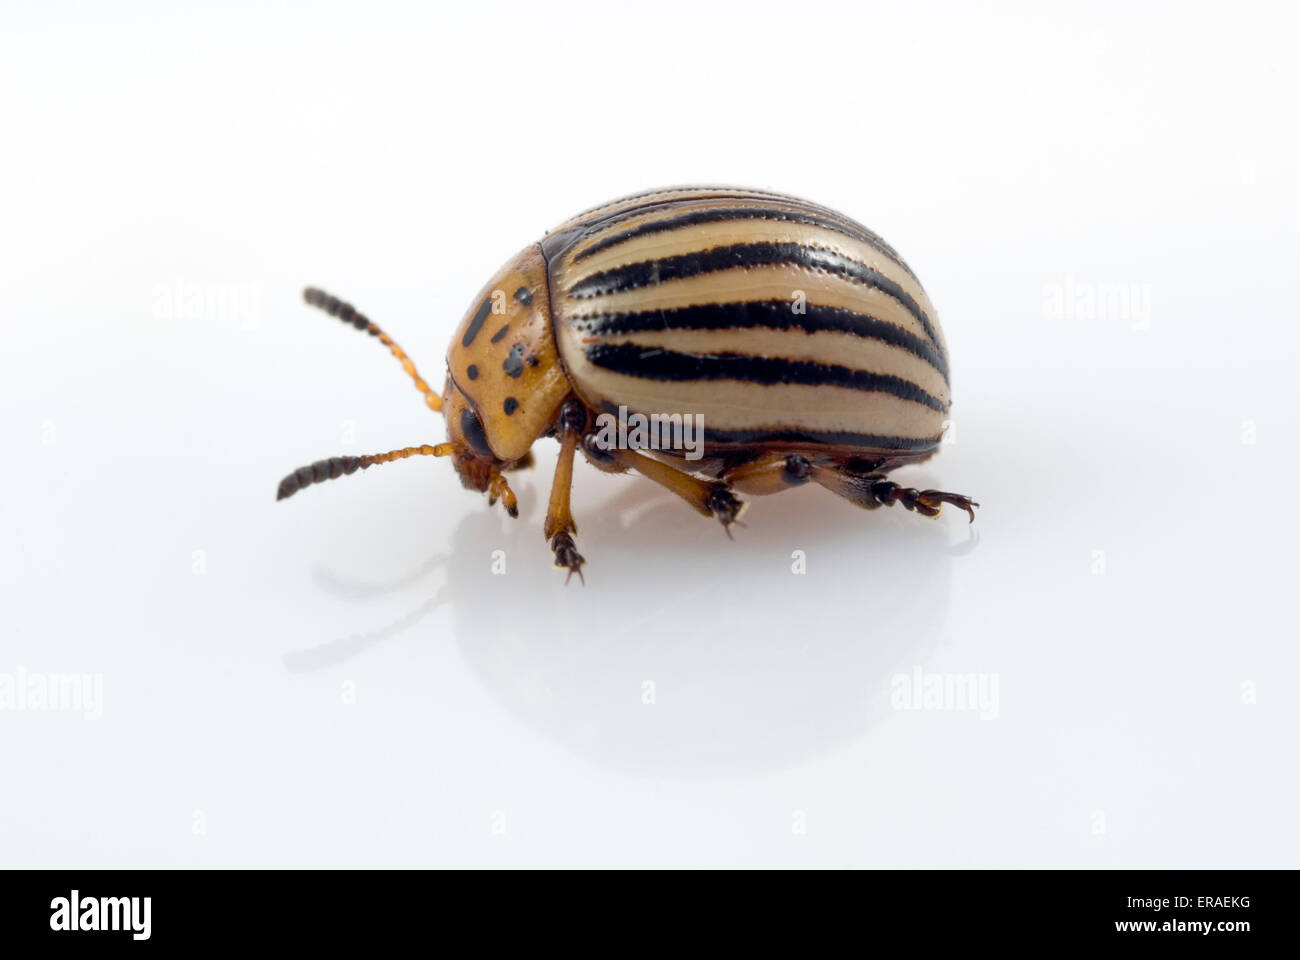 Potato Beetle (Leptinotarsa decemlineata) on Potato Plant Stock Photo